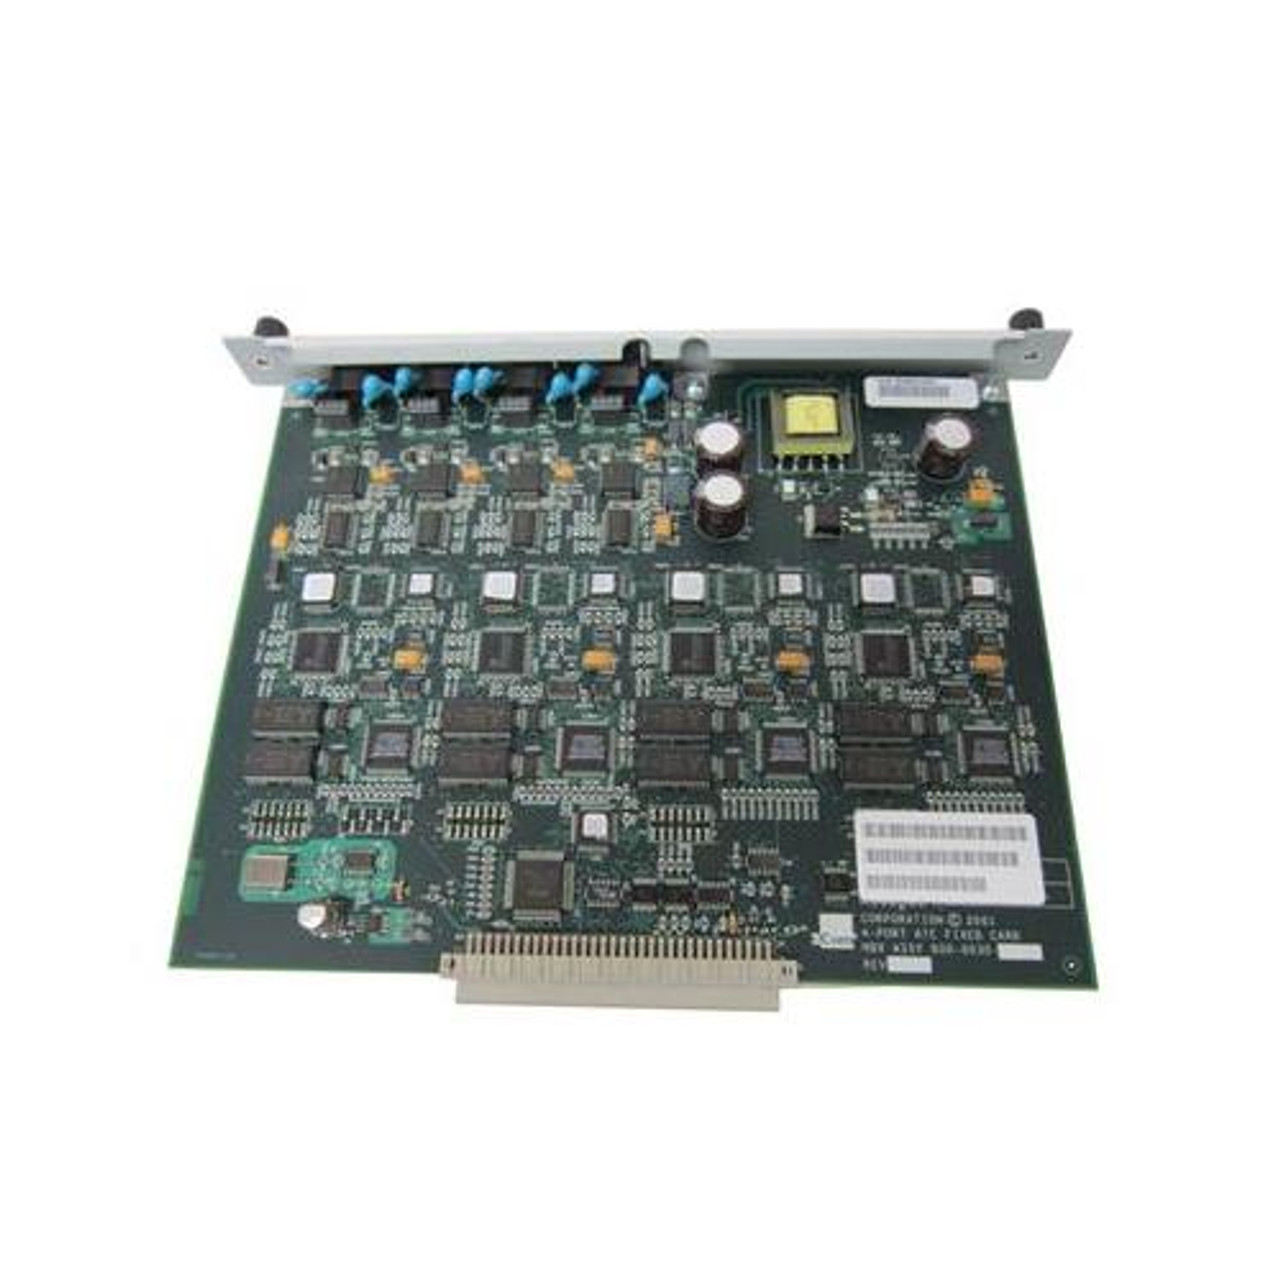 0231A80H 3Com 48-Port Gigabit Ethernet Switching Module 48 x 10/100/1000Base-T LAN Switching Module (Refurbished)